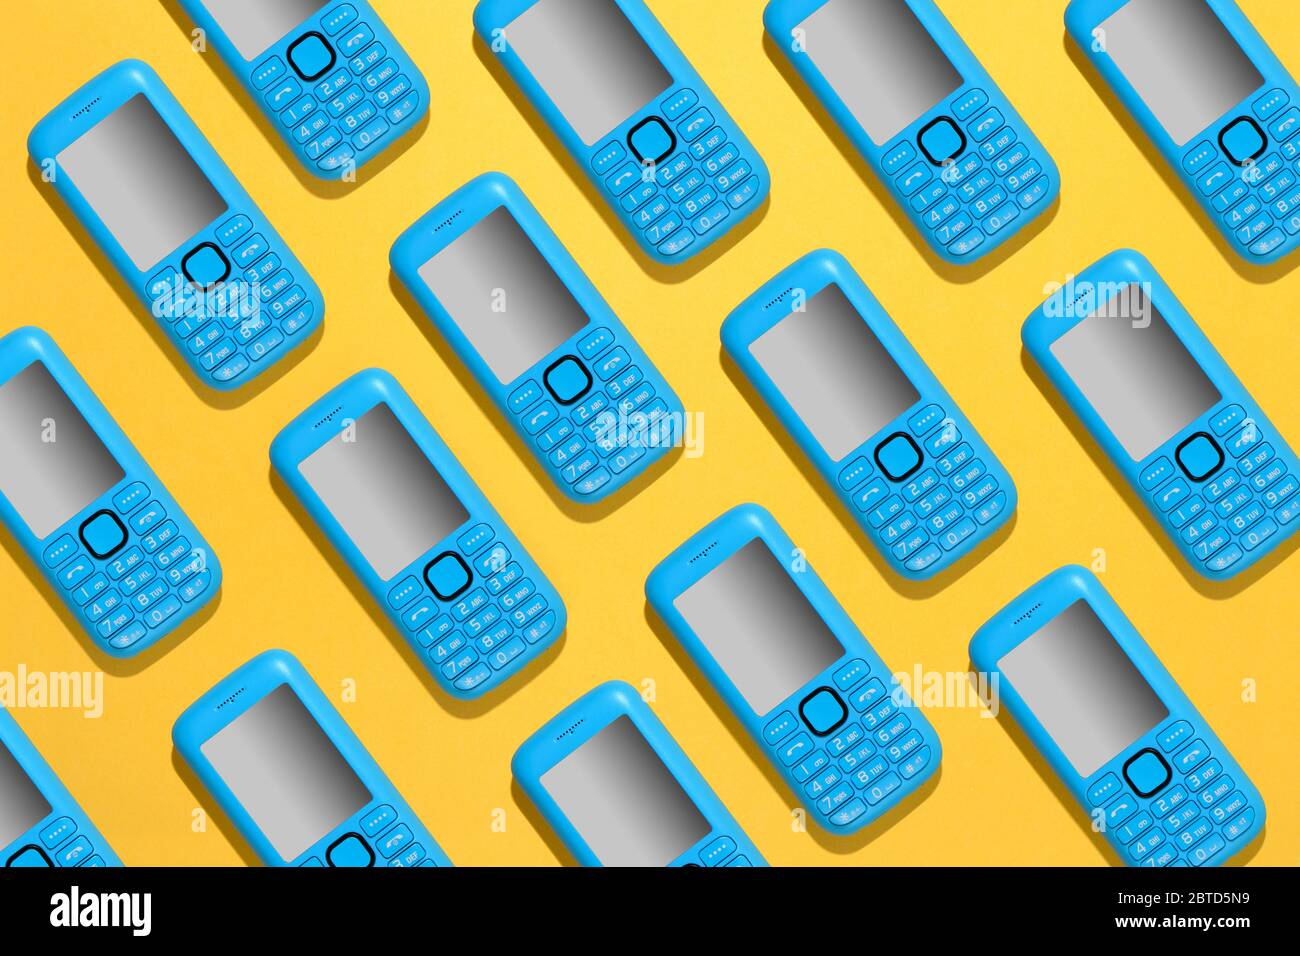 Buntes blaues Handy-Hintergrundmuster mit wiederholten Handy-Symbolen in diagonalen Reihen über einem hellen gelben Hintergrund Stockfoto